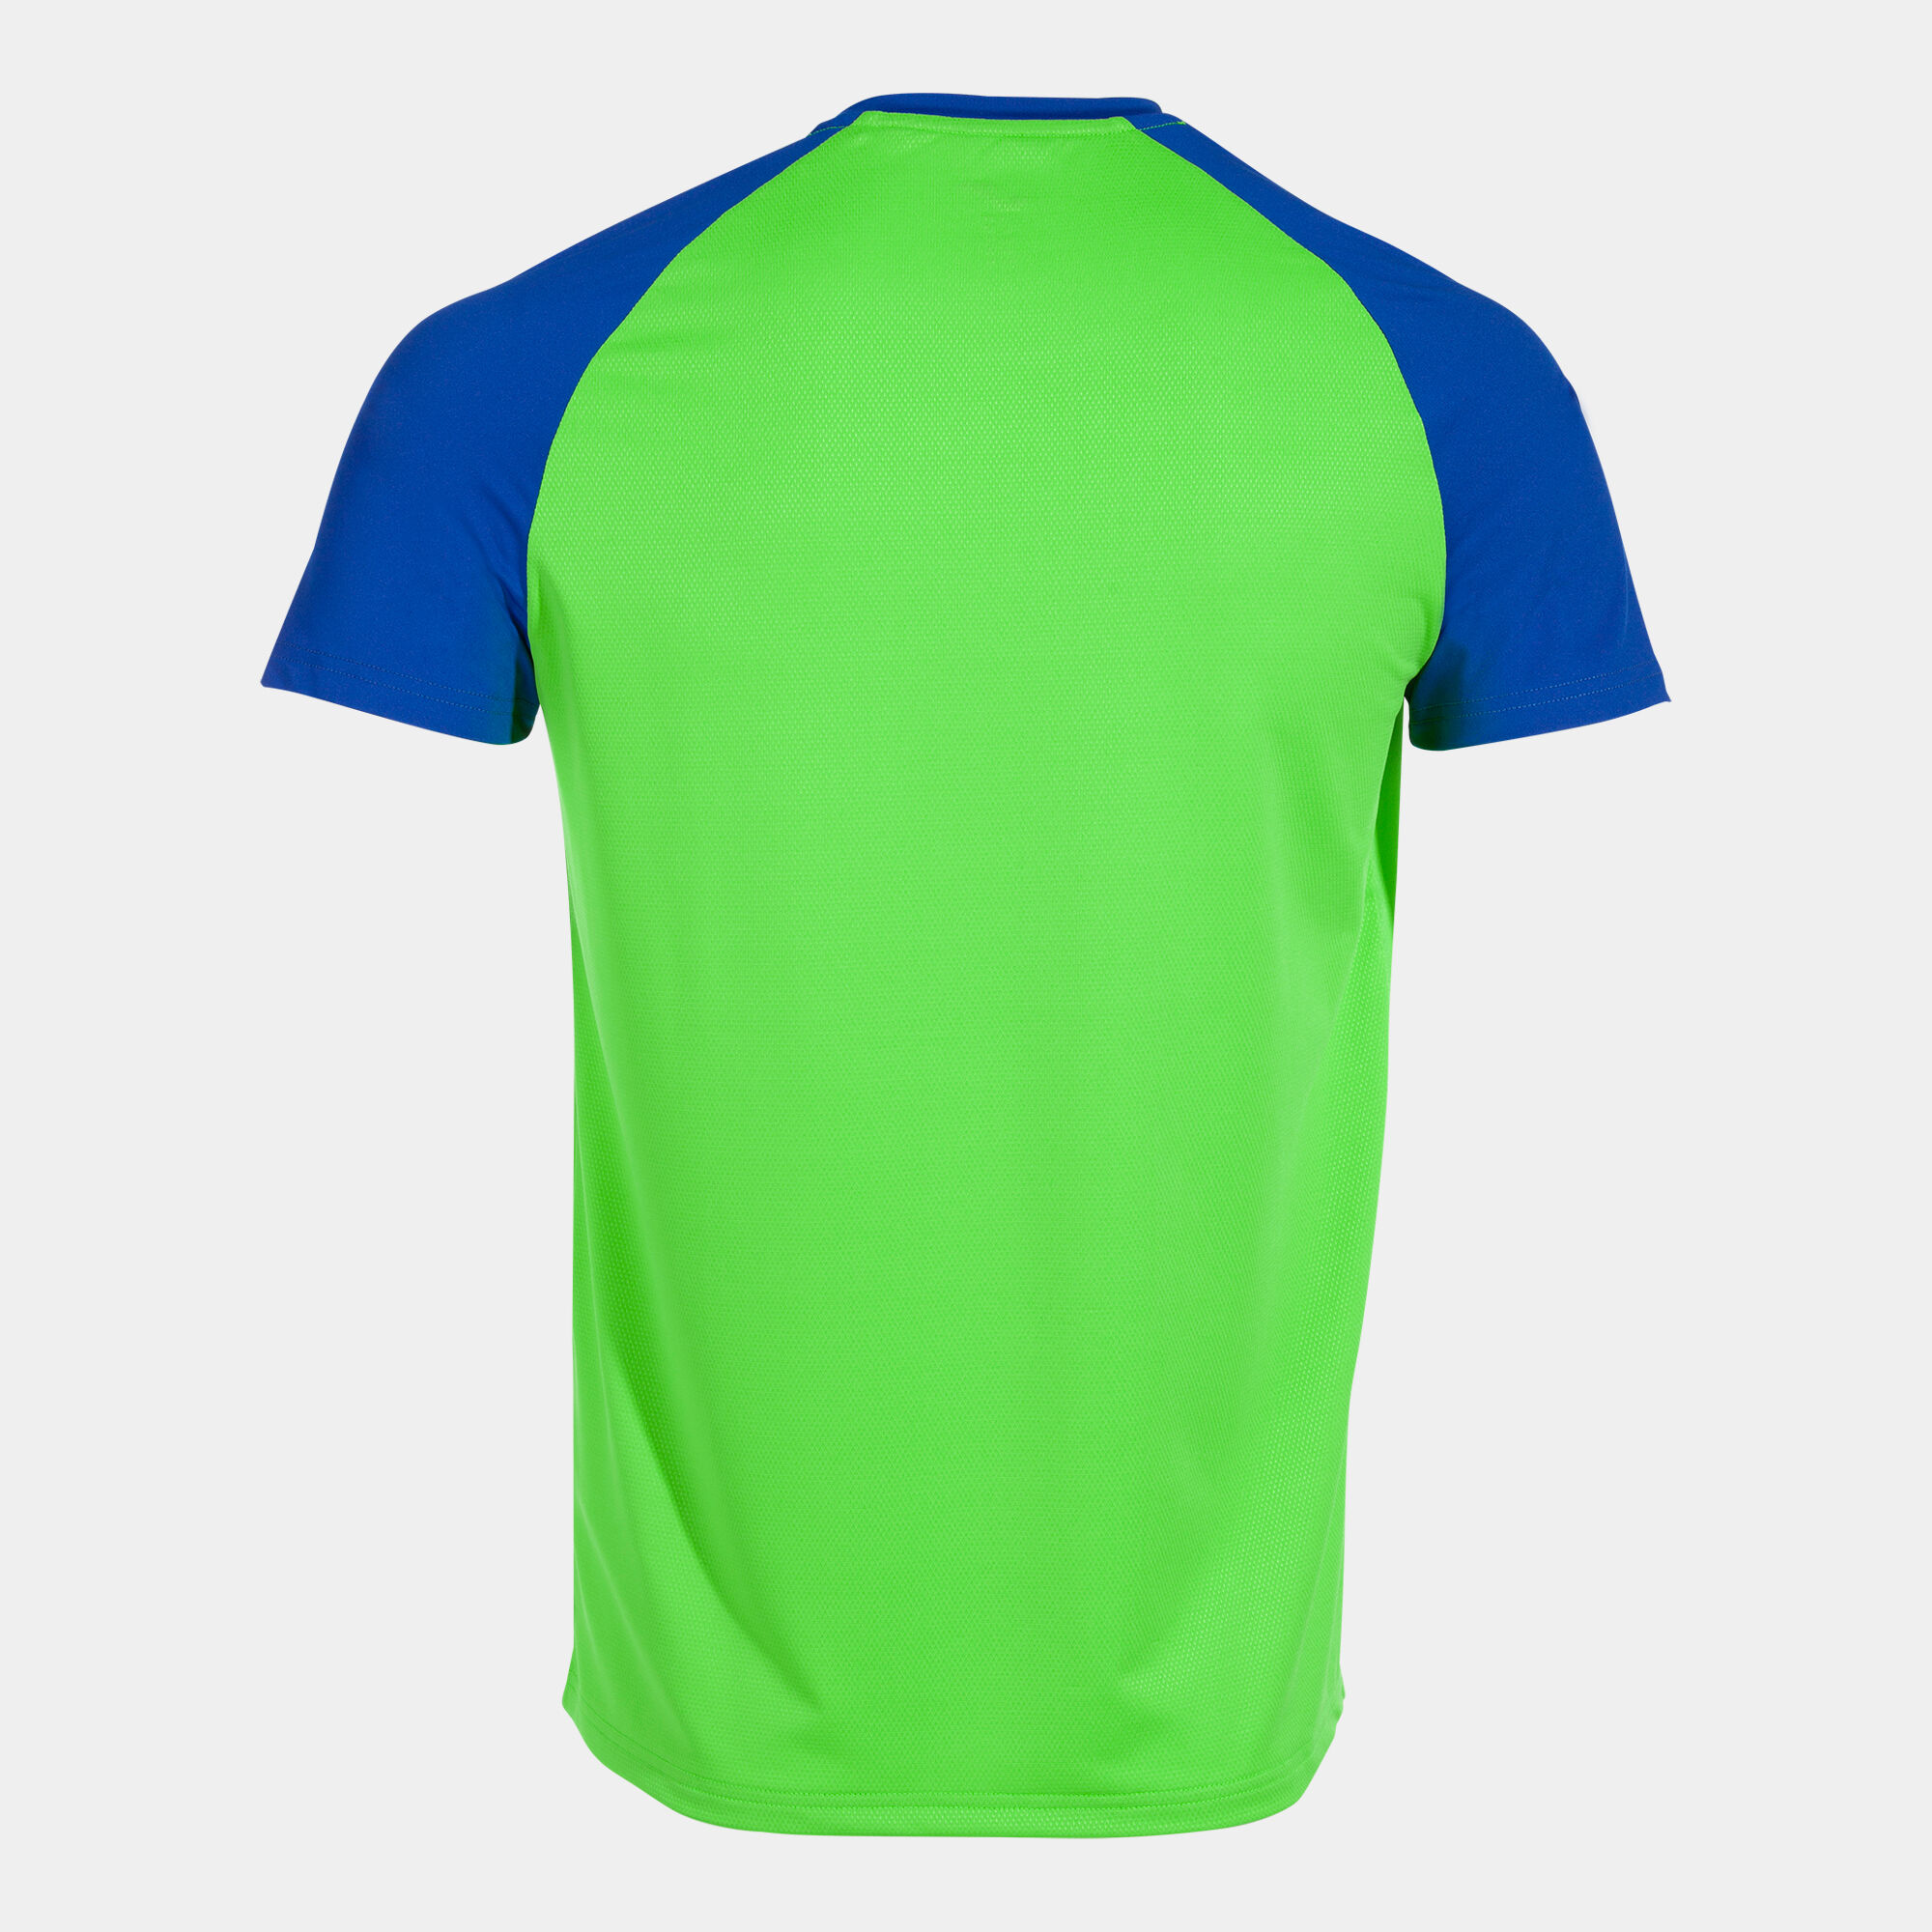 Koszulka z krótkim rękawem mężczyźni Elite X fluorescencyjny zielony niebieski royal